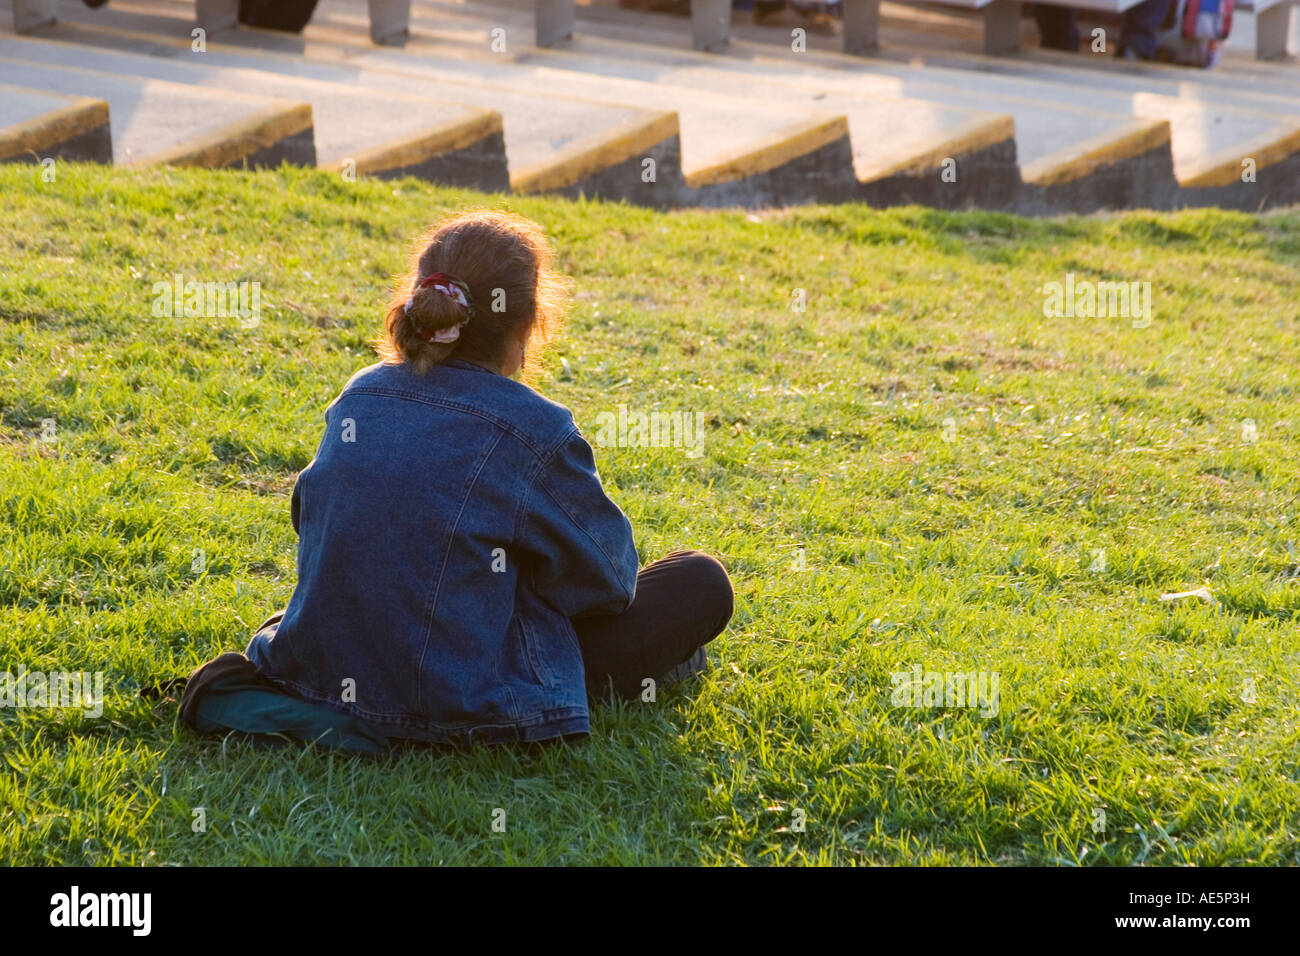 Zurück von einer rothaarigen Frau sitzt auf einem Rasen Hügel in einem Stadion beobachten ein lokales Ereignis in der Nachmittagssonne Stockfoto